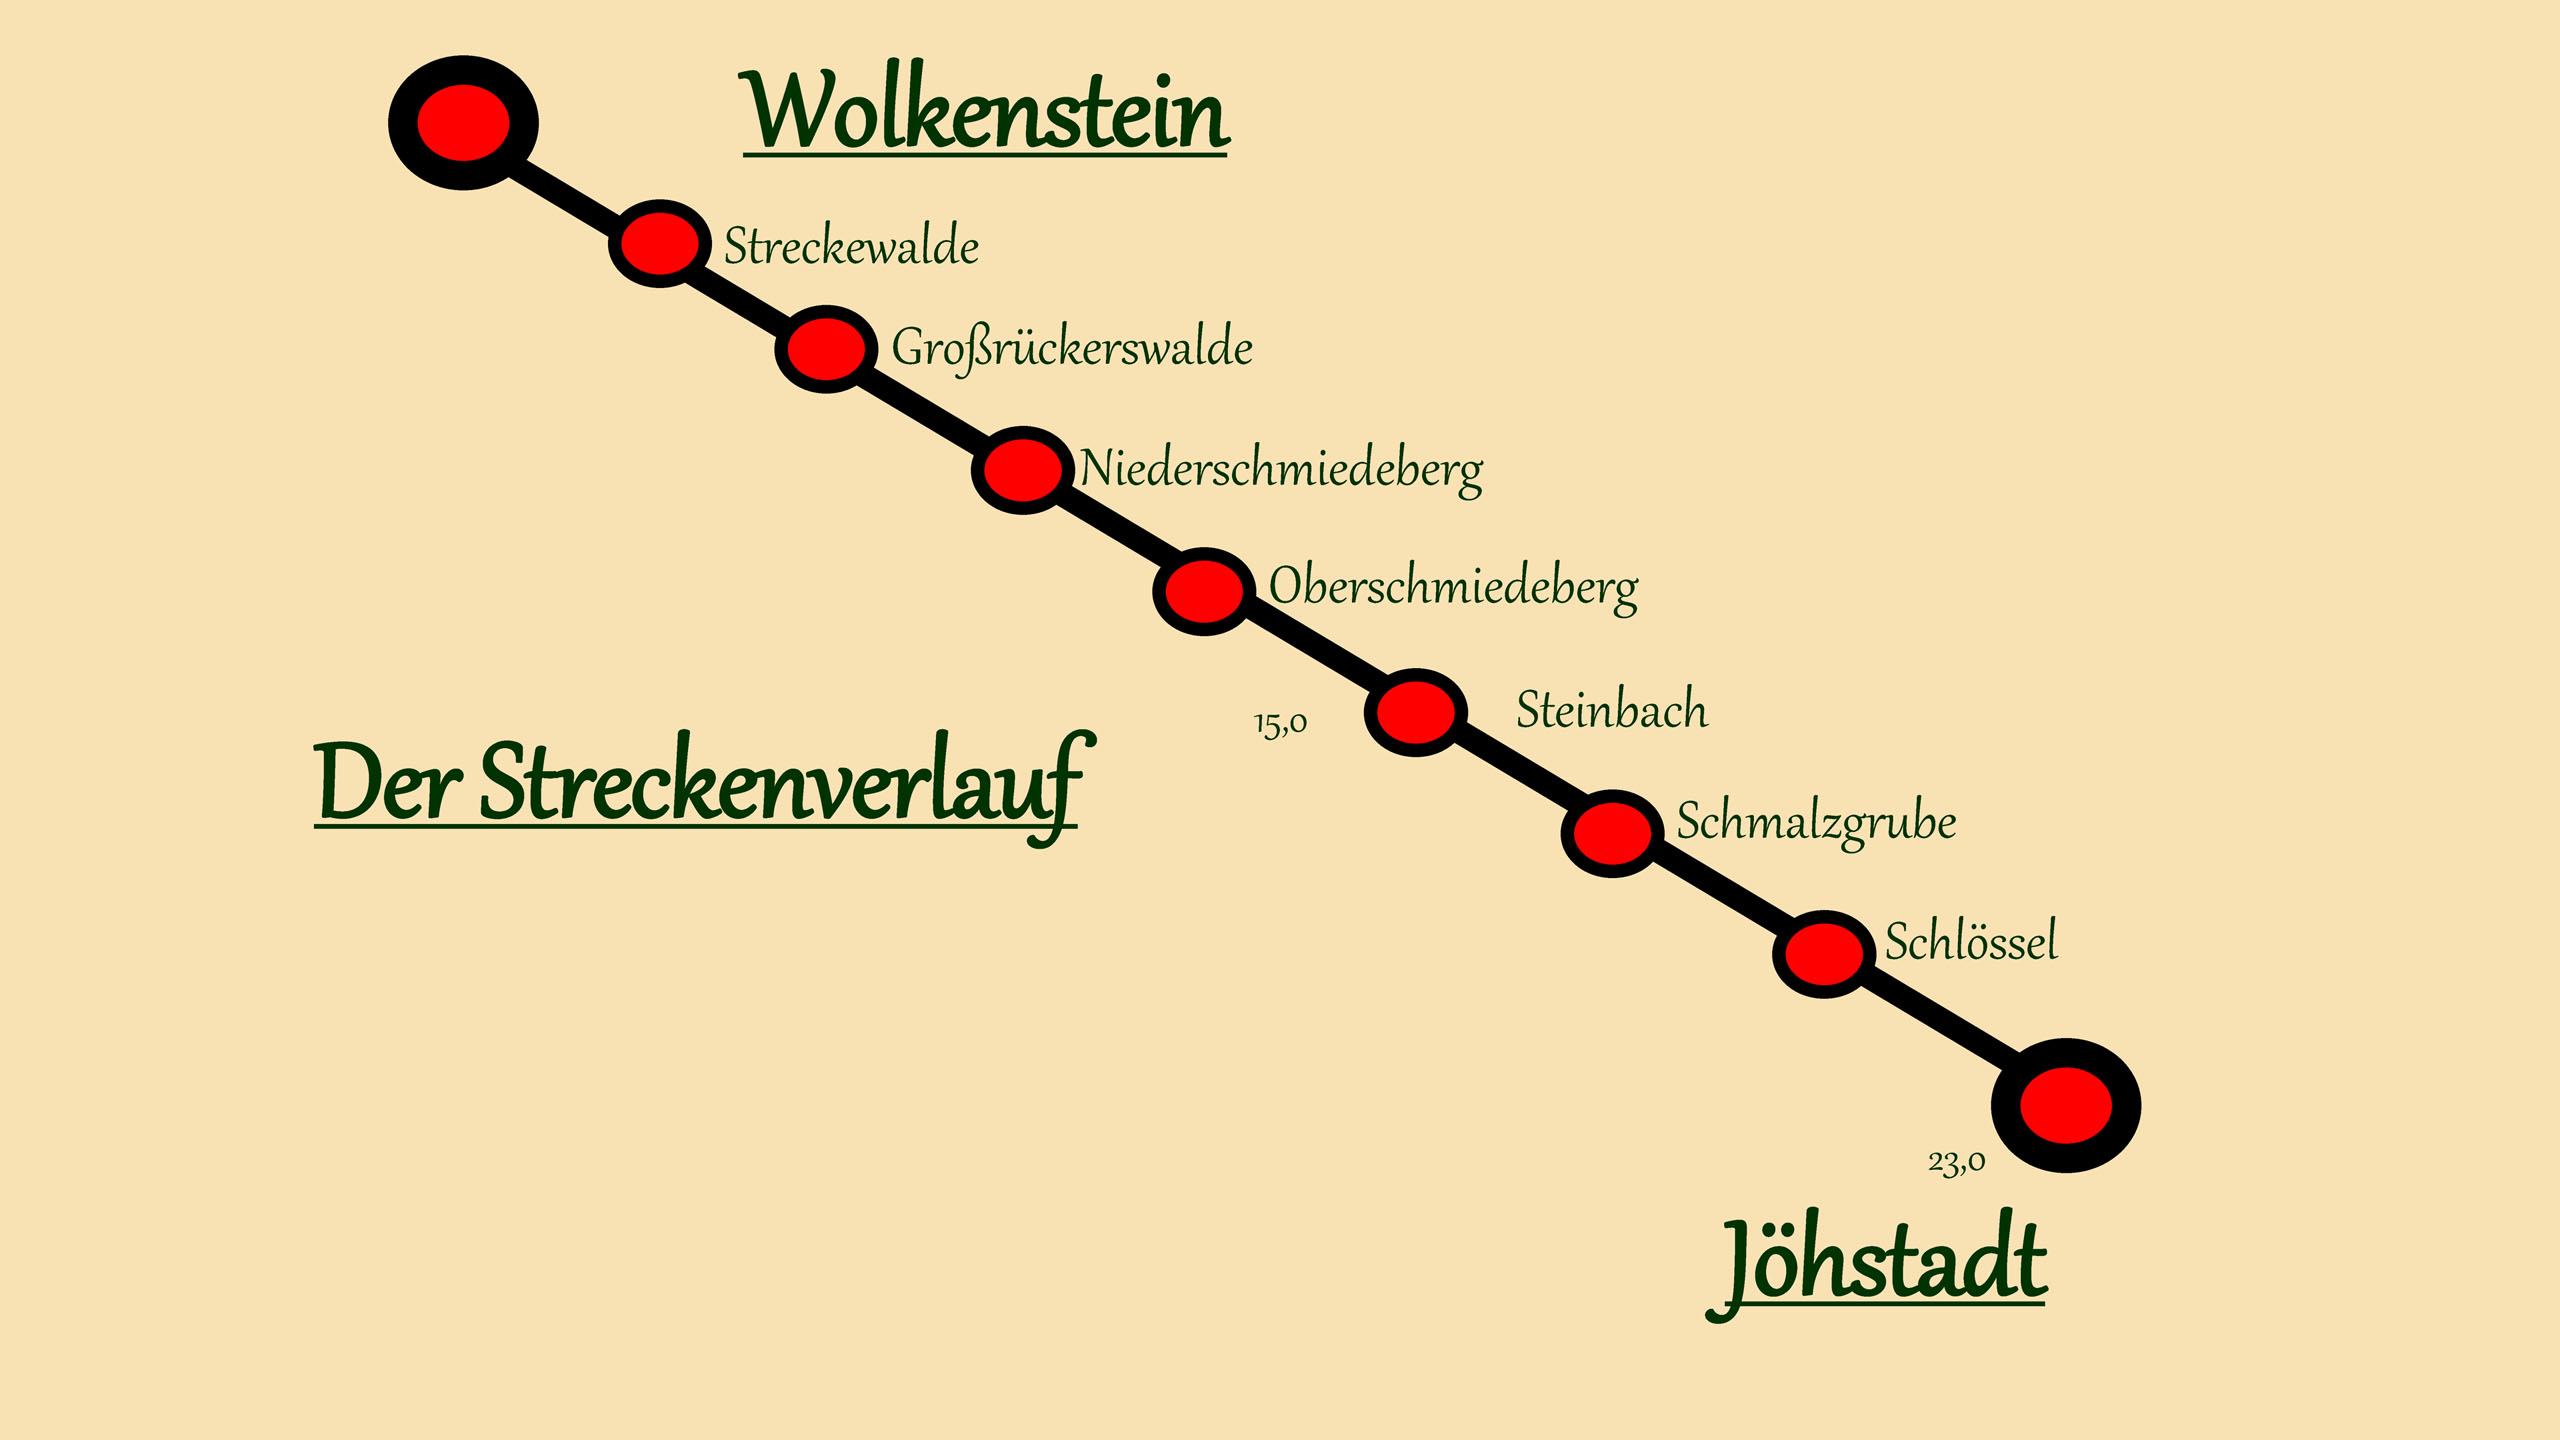 Insbesondere in Sachsen gab es sehr viele Schmalspurstrecken, darunter eine, die immer wieder fasziniert, nämlich die Preßnitztalbahn, die einst zwischen Wolkenstein und Jöhstadt verkehrte.